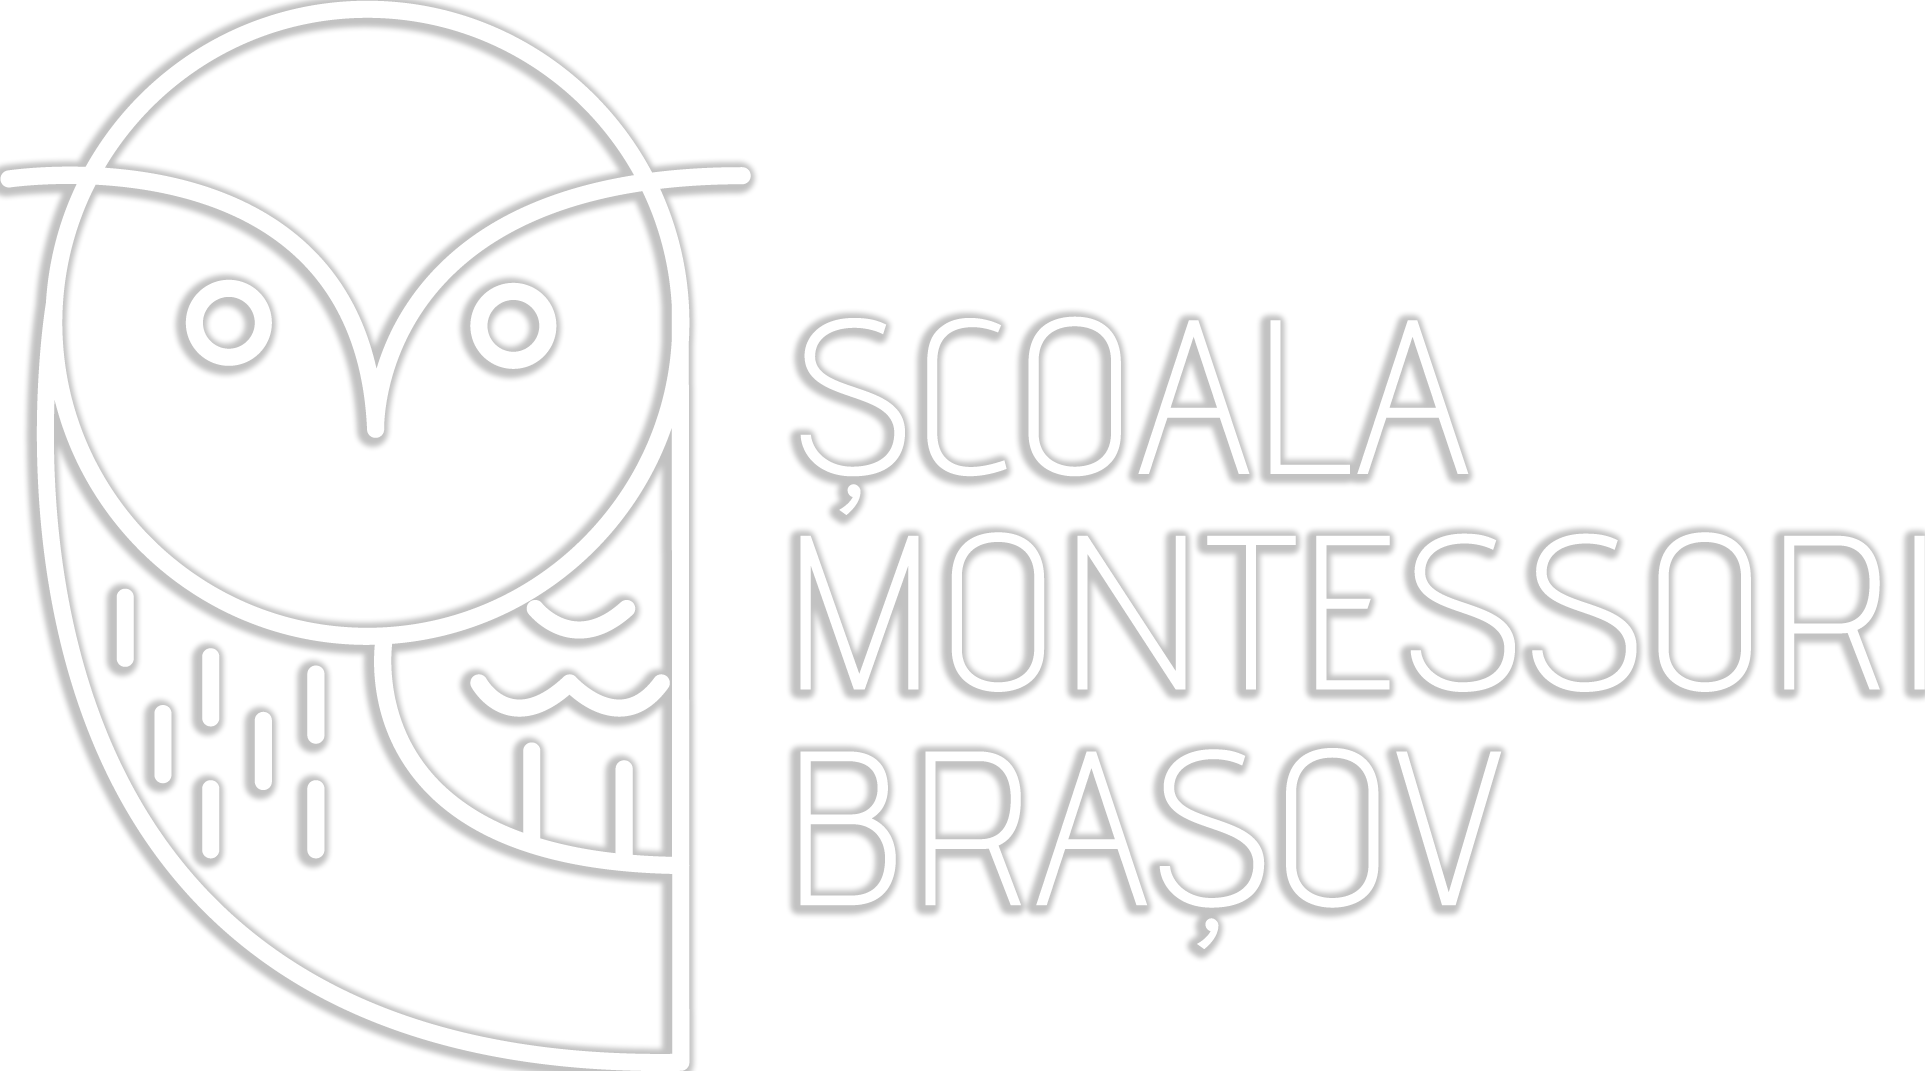 Scoala Montessori Brasov